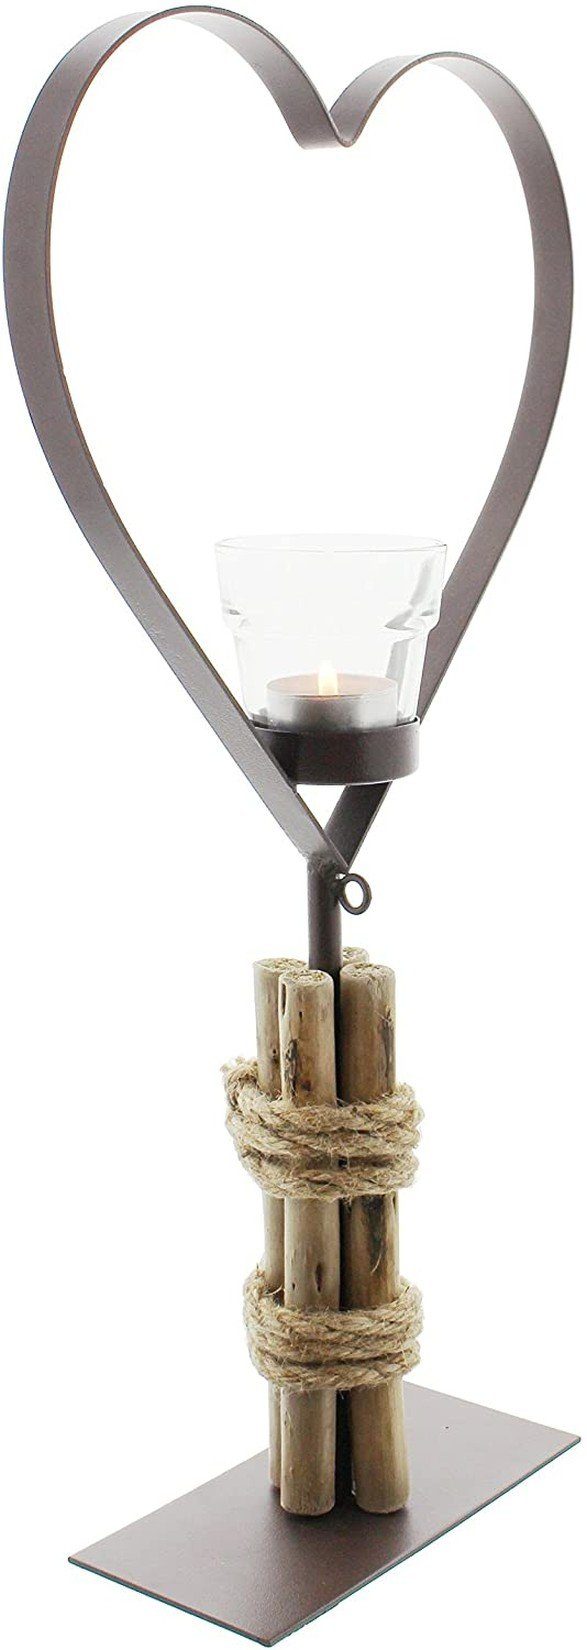 Dekoherz (1 großes Teelichthalter mit Hochzeitsdeko Metall-Herz Glas-Teelichthalter Treibholz, Dekoleidenschaft & St),